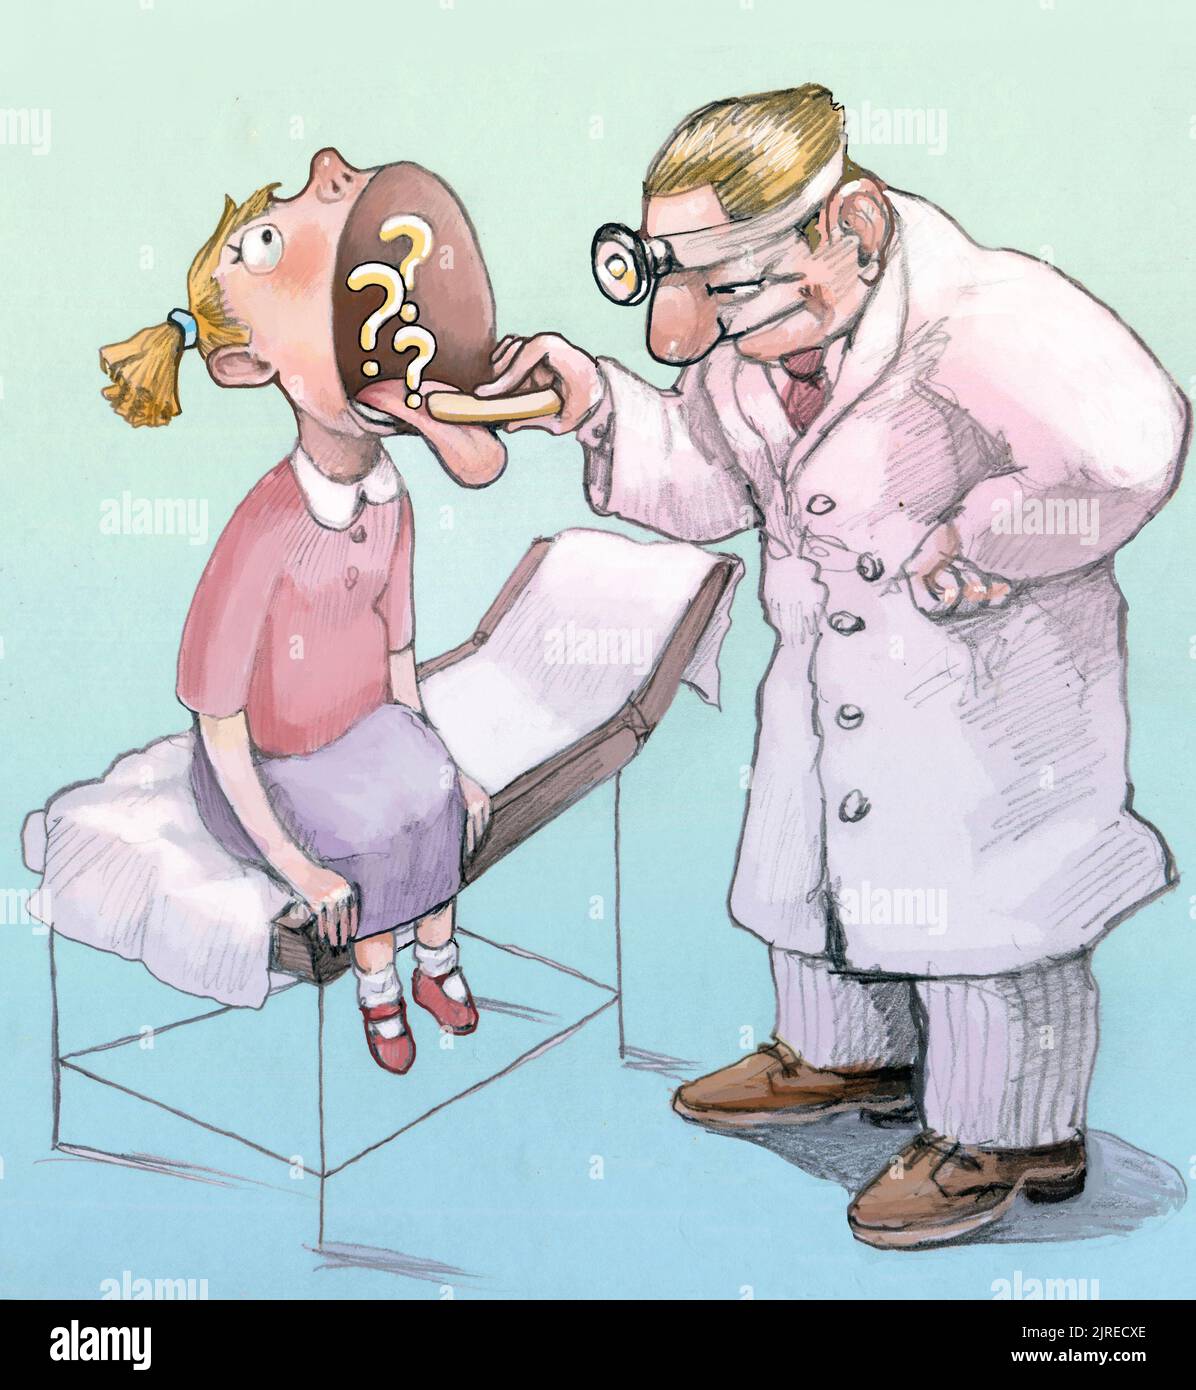 una chica visitó en una clínica dentro de la boca abierta se ve la metáfora de signos de interrogación para un chequeo médico Foto de stock